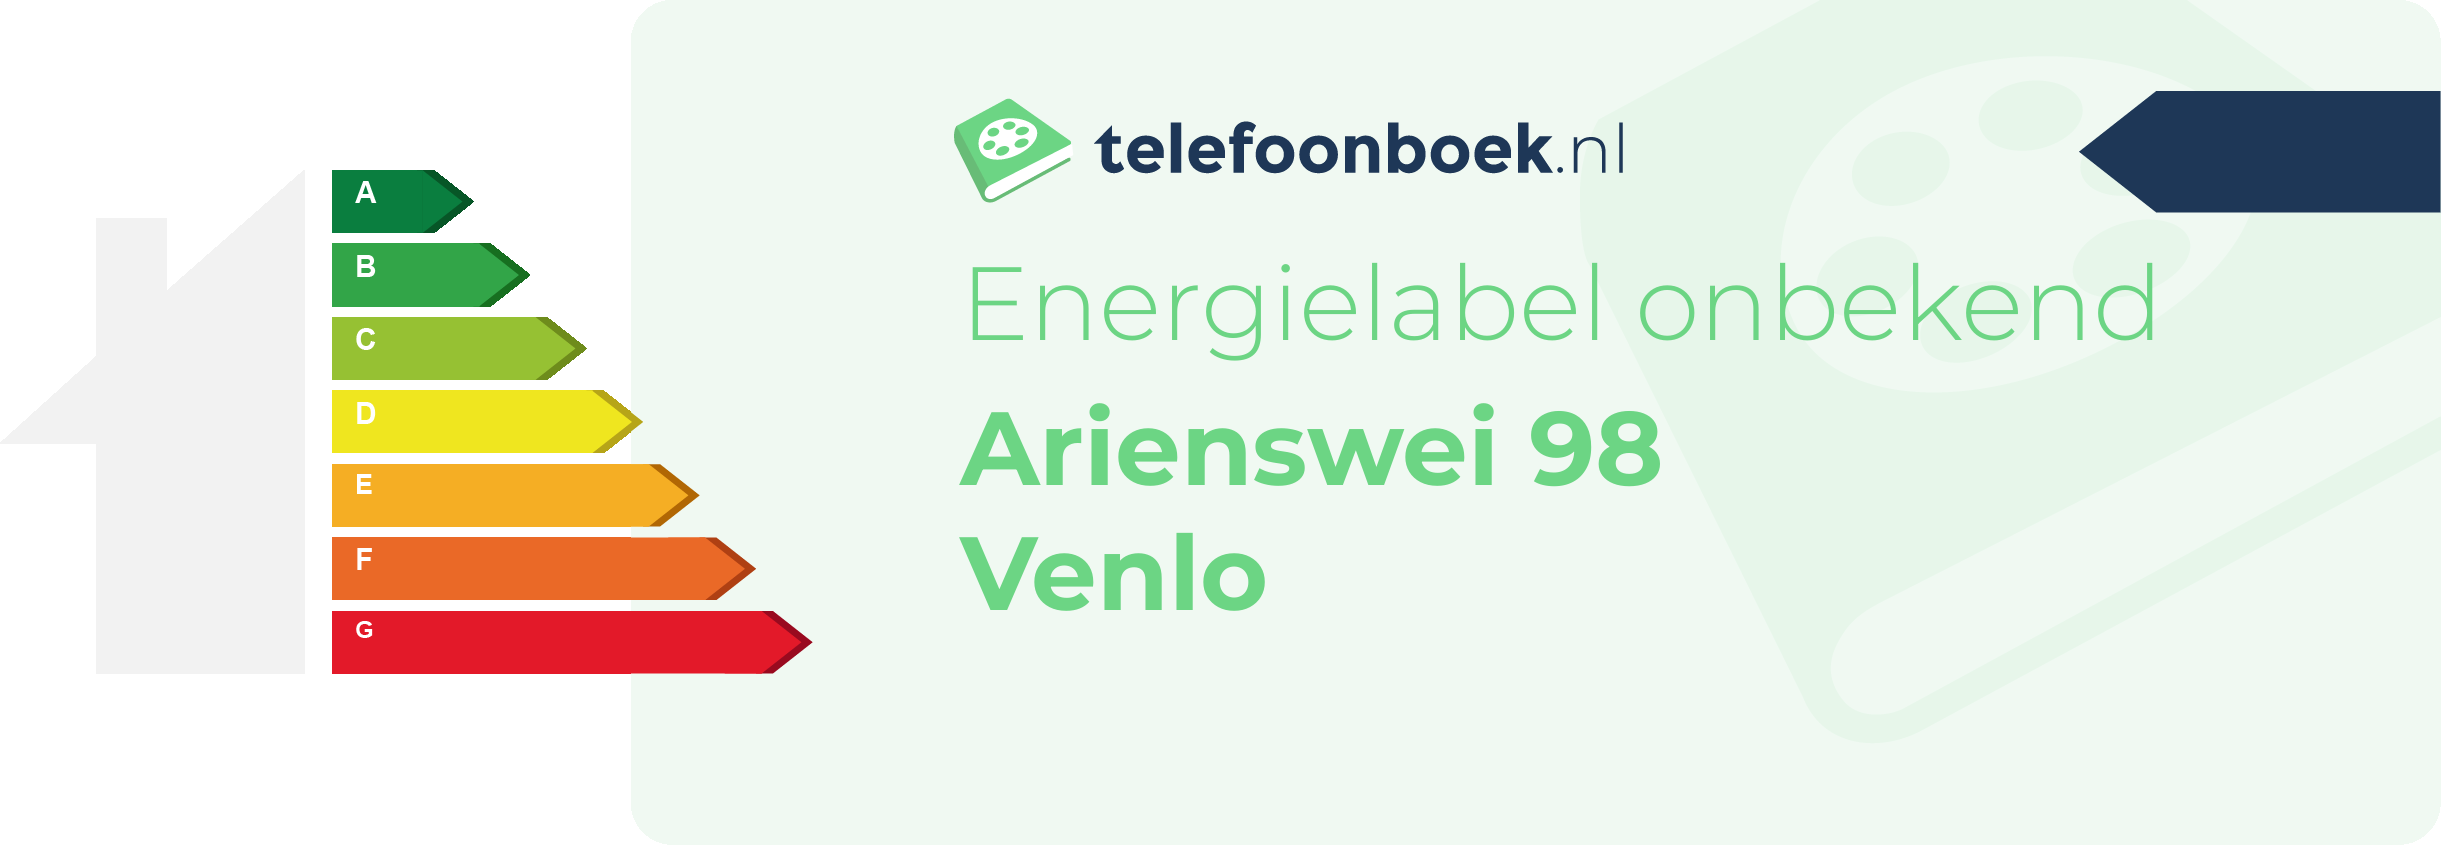 Energielabel Arienswei 98 Venlo